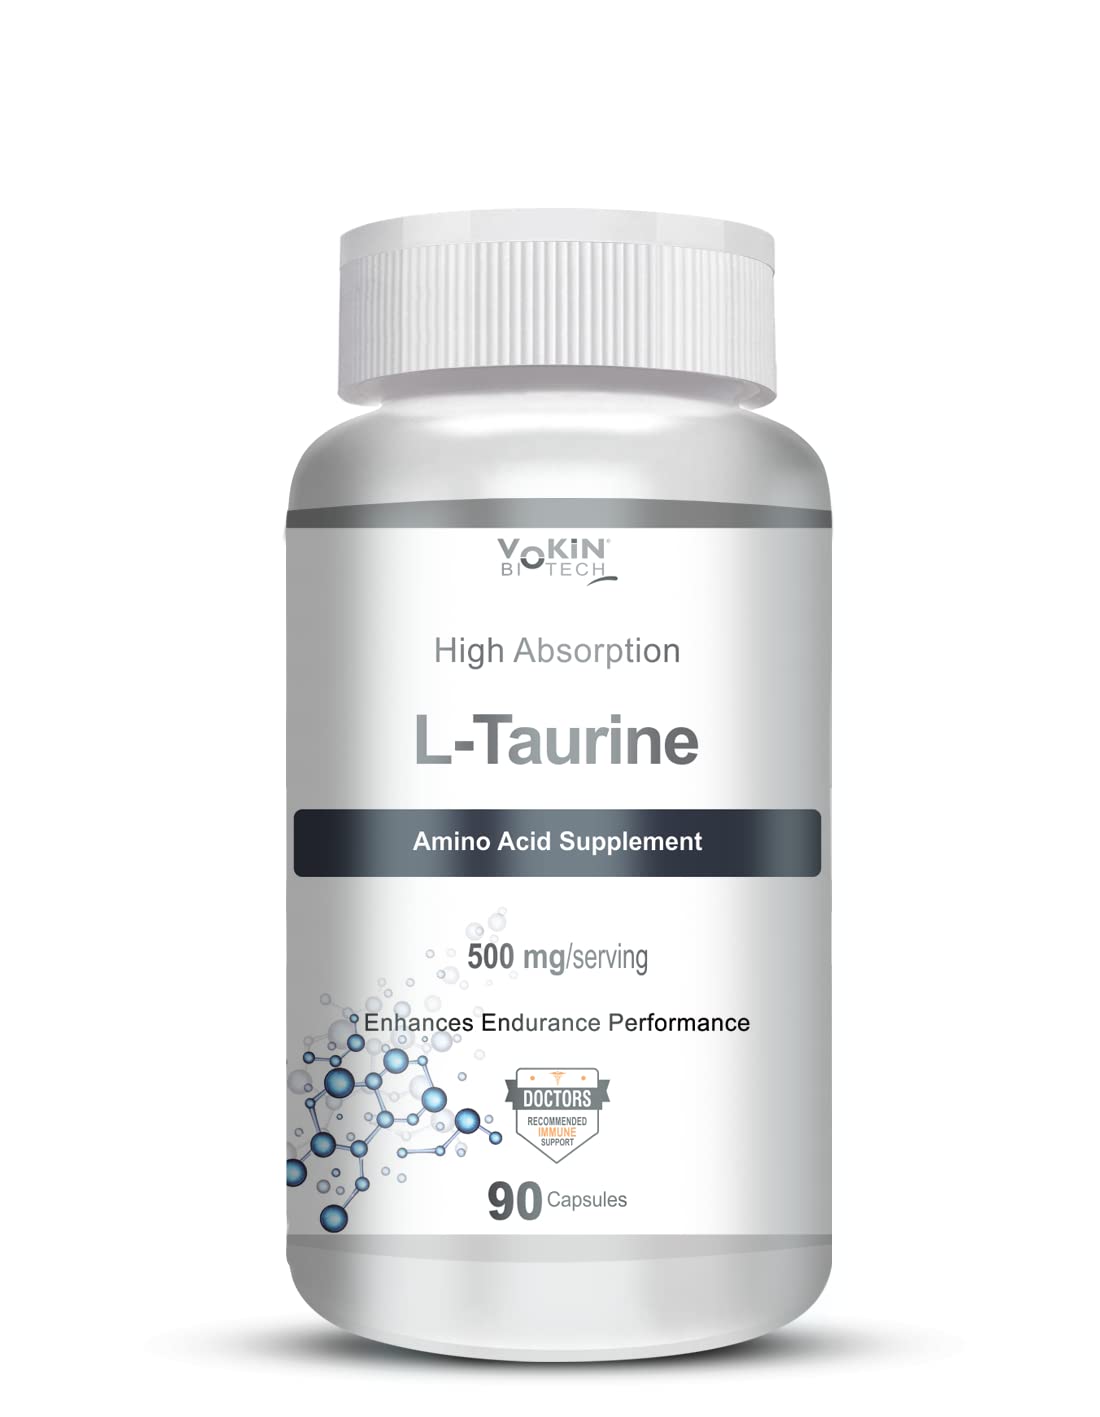 Vokin Biotech L-Taurine 500mg Supplement